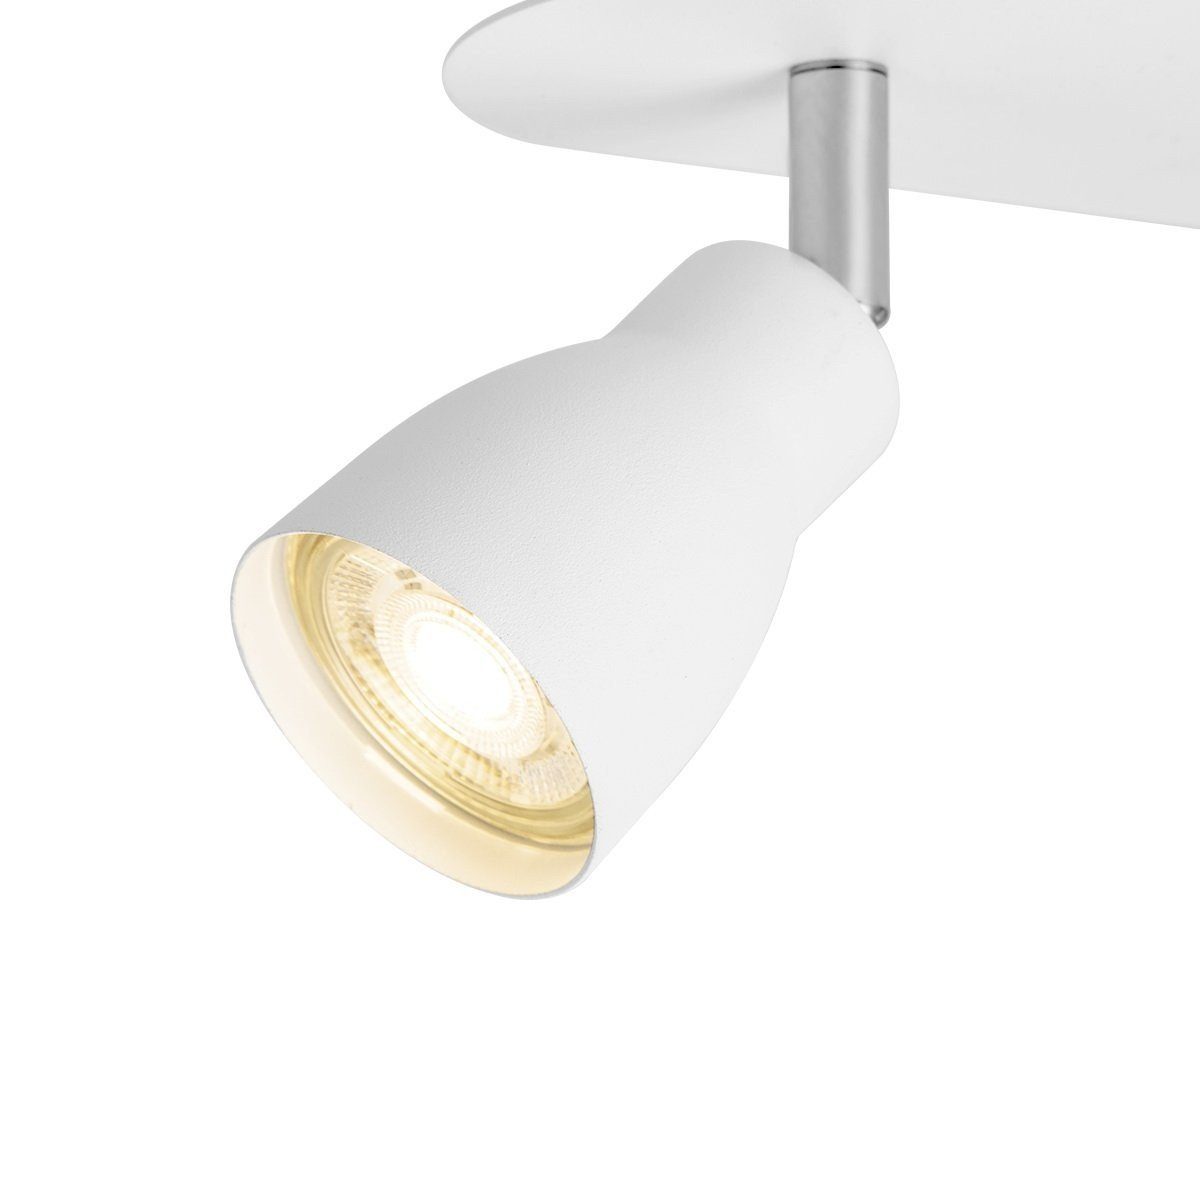 LED 2fach GU10 home ALBA inkl. home - Deckenbalken Deckenleuchte weiß - Deckenspot sweet